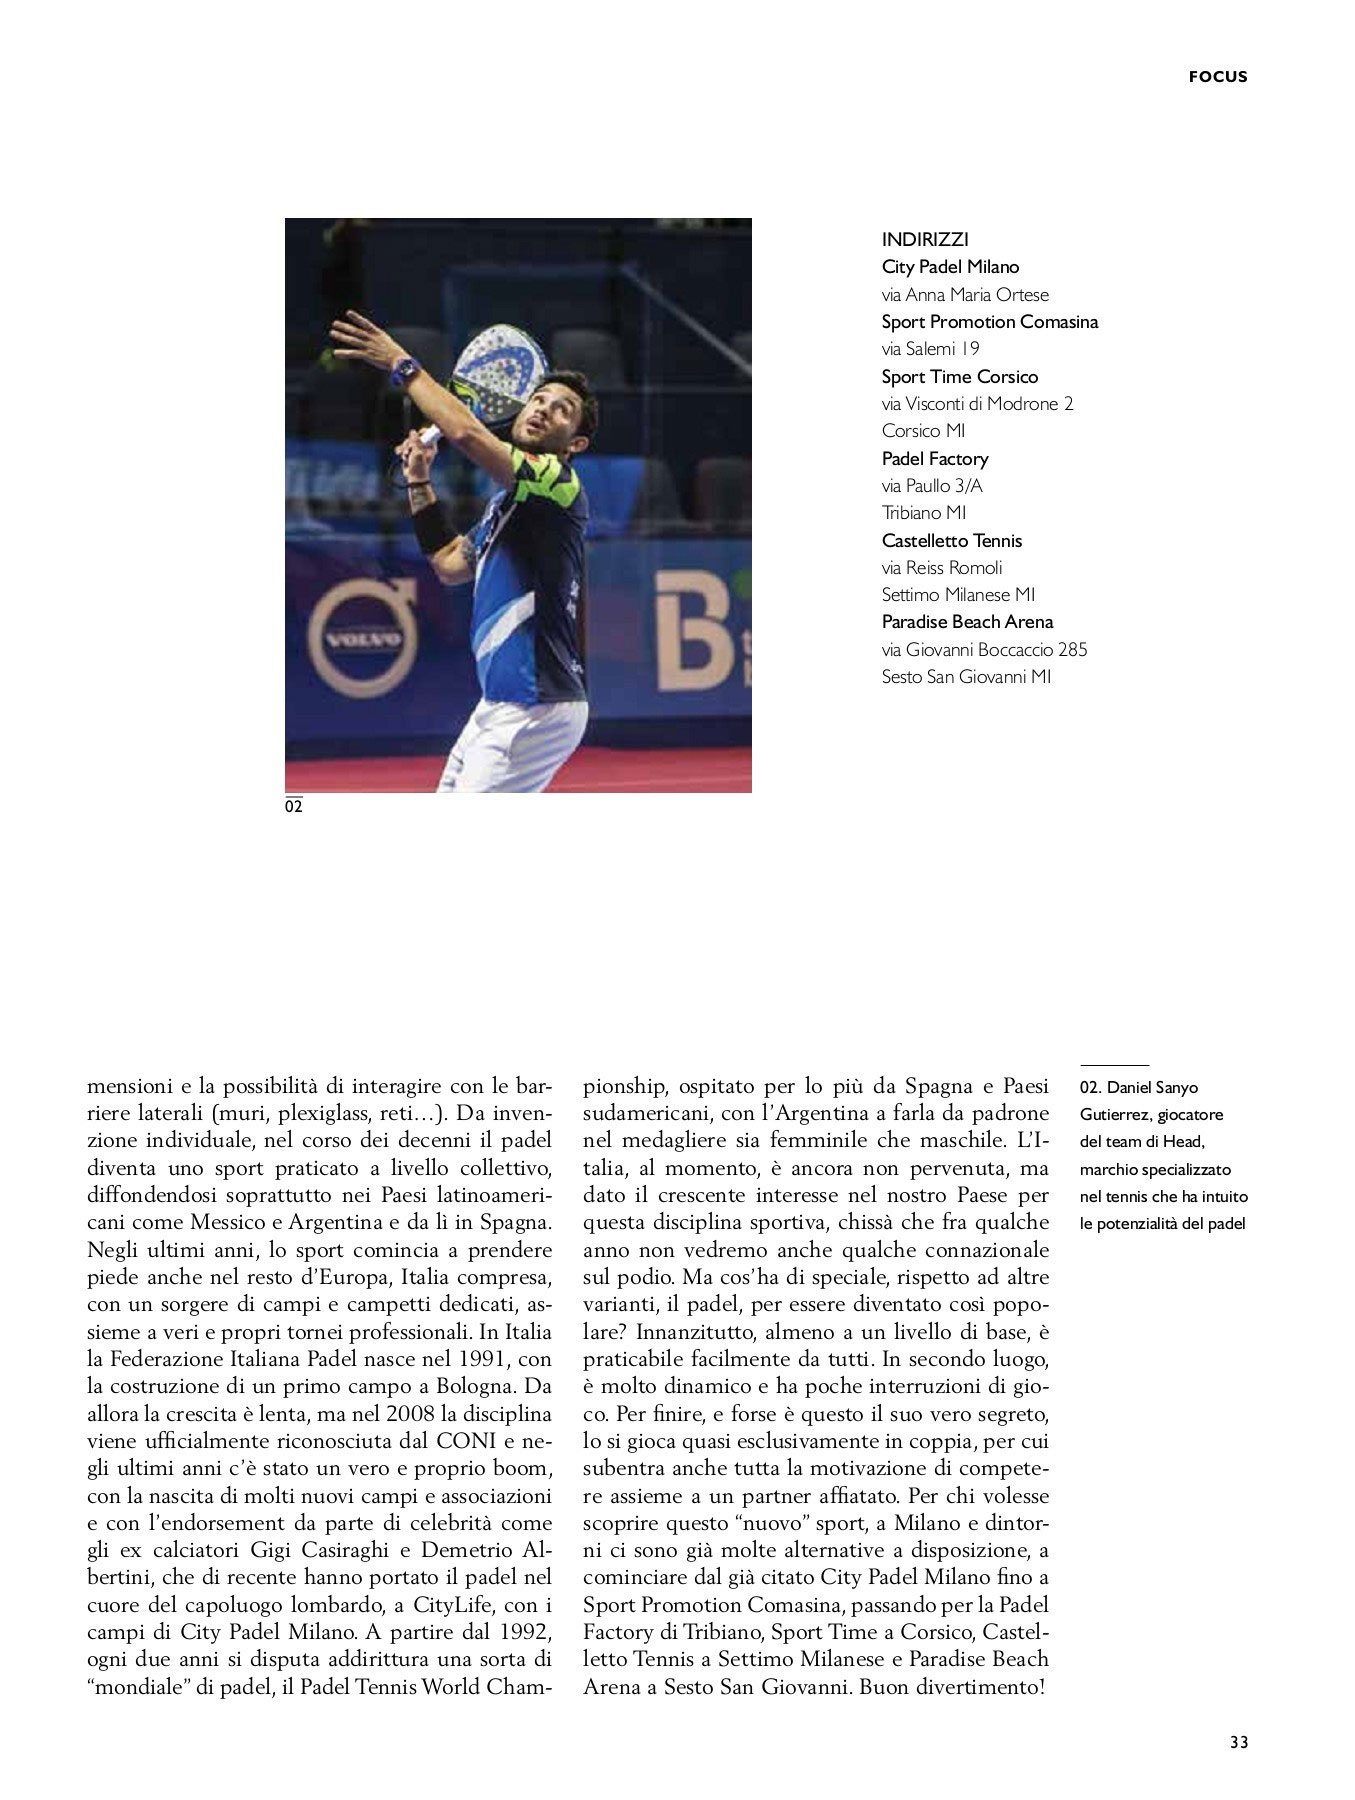 Storia di uno sport ibrido (Club Milano, Febbraio 2019)